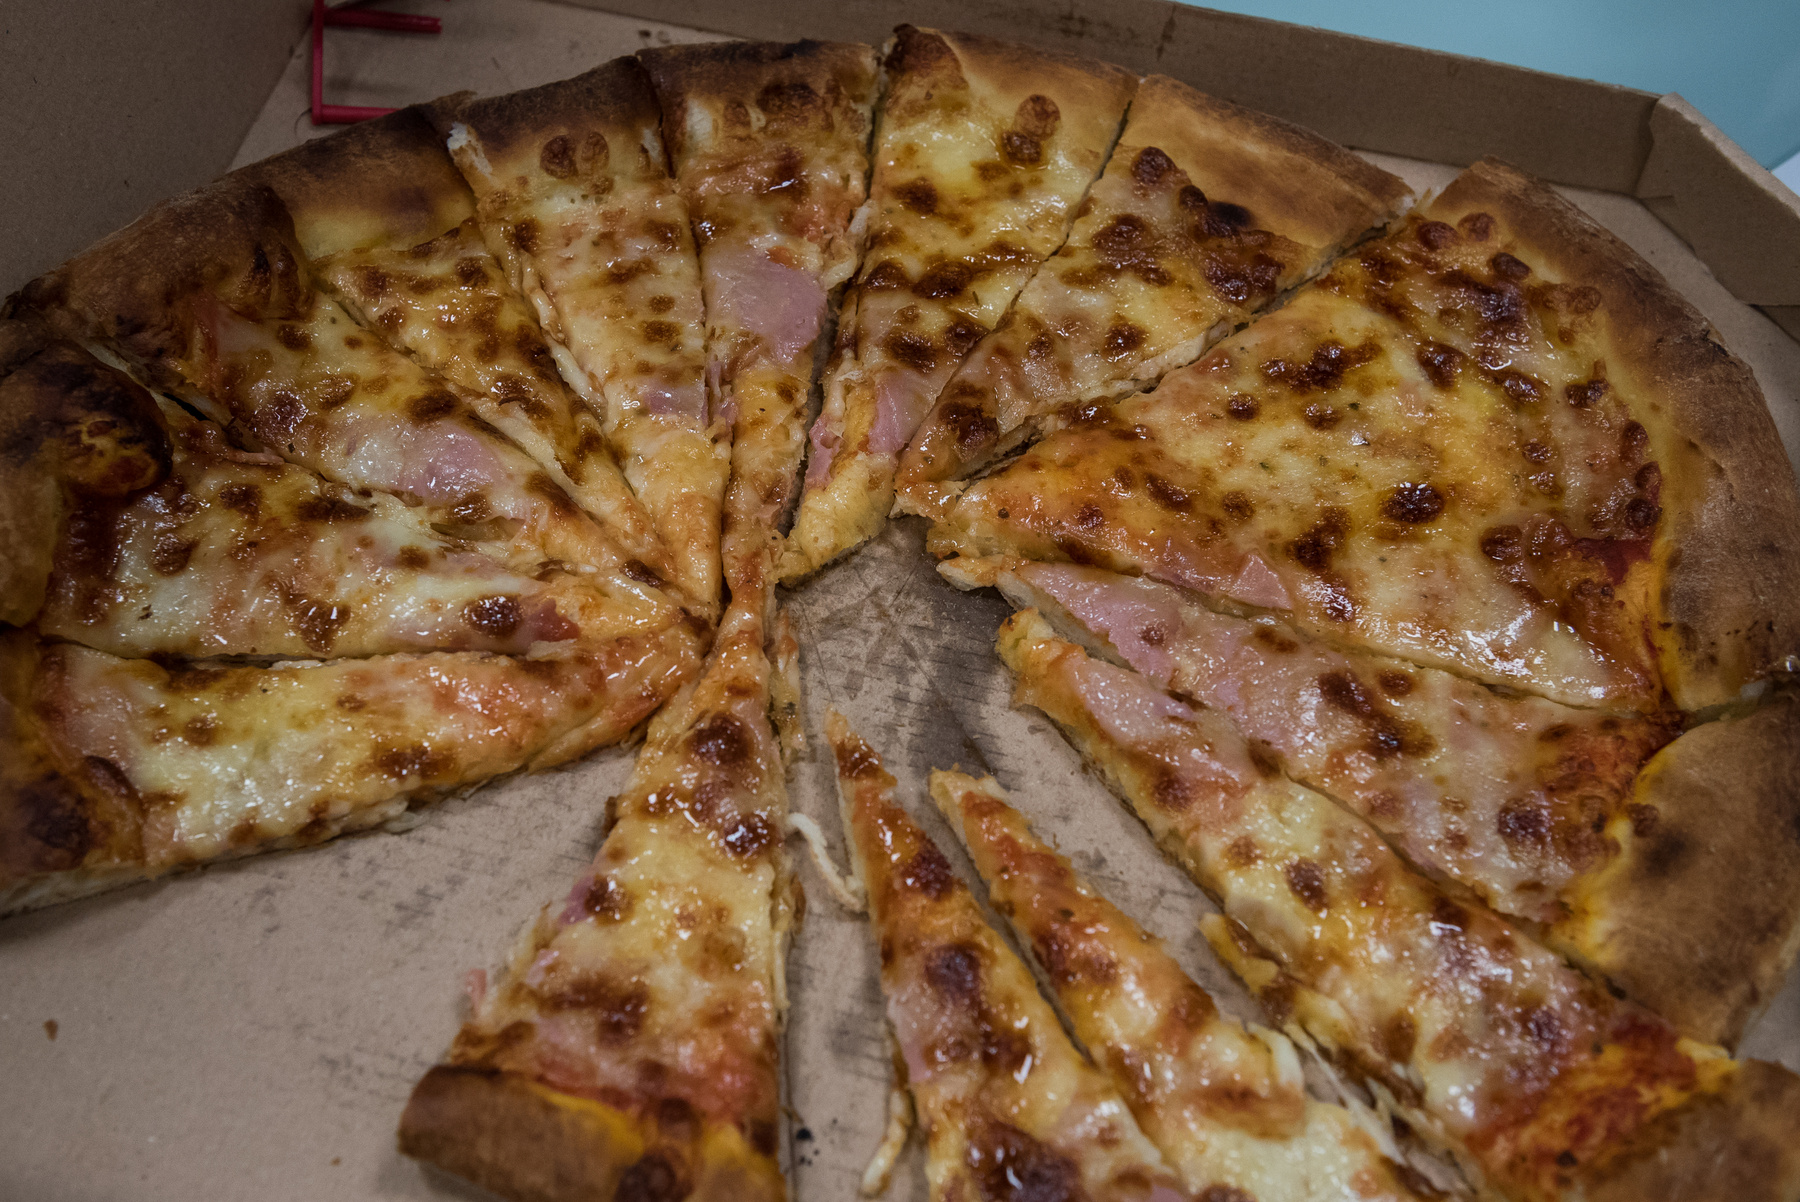 Most egy pizzafalatot sem köptünk ki és mi már az ilyen kis dolgoknak is nagyon örülünk!